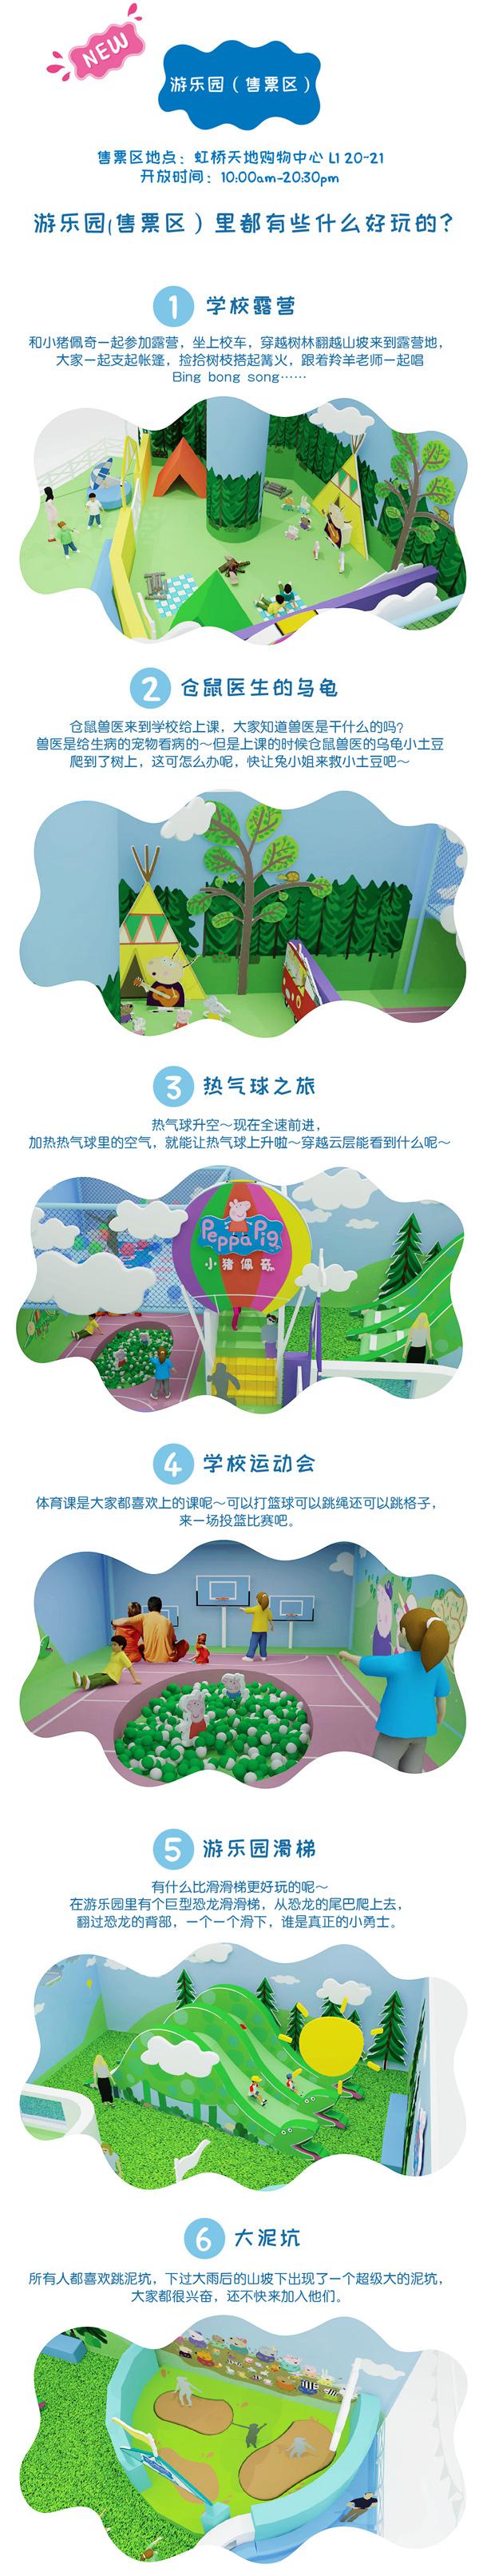 小猪佩奇2.0升级版 夏日游乐园  上海站